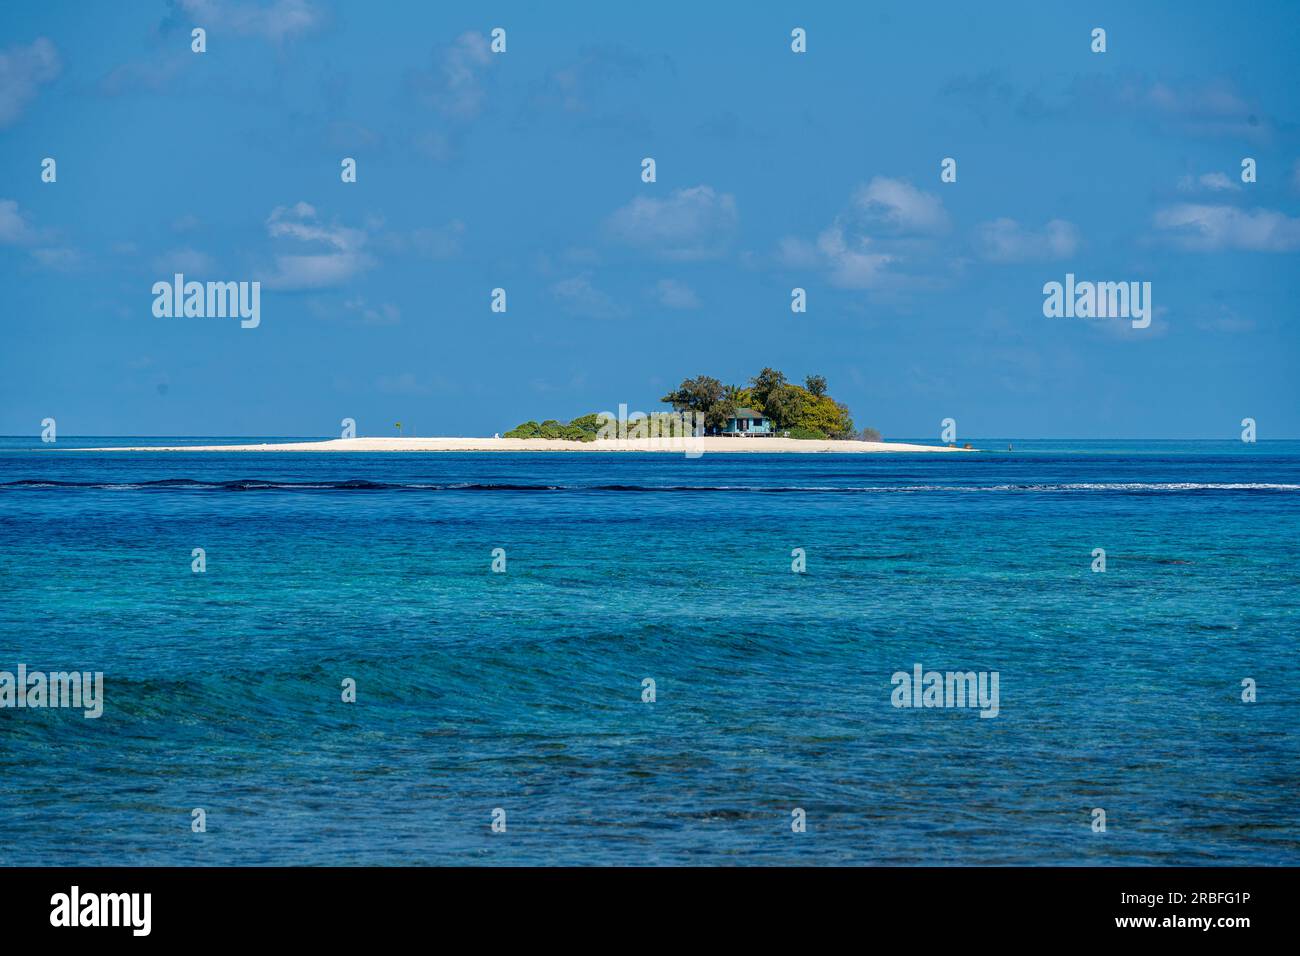 Ceci est une image téléobjectif d'un petit îlot au large de la plage aux Maldives. Banque D'Images